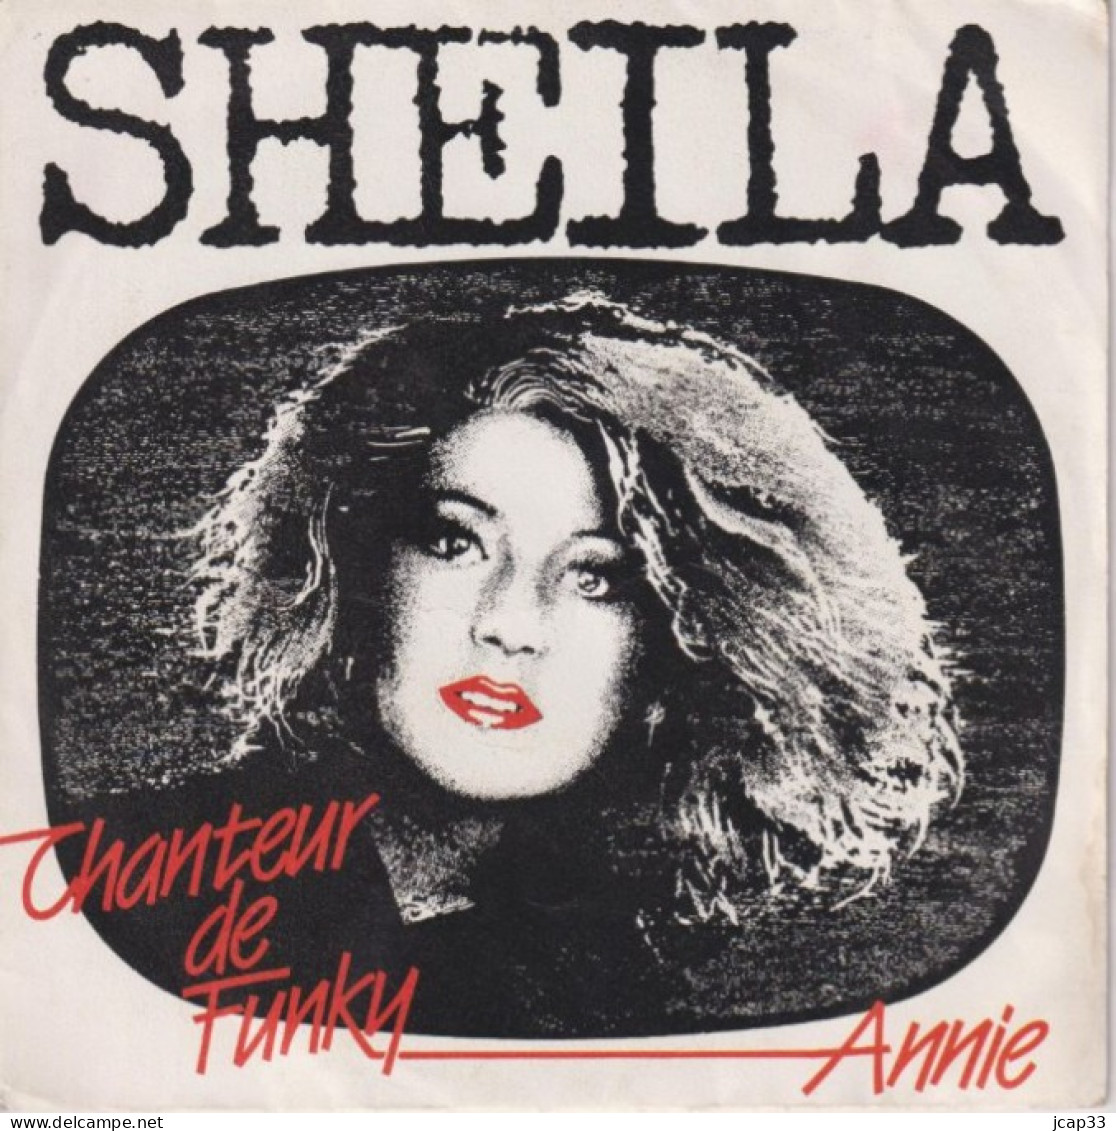 SHEILA  -  CHANTEUR DE FUNKY  -  ANNIE  -  1985  - - Sonstige - Franz. Chansons